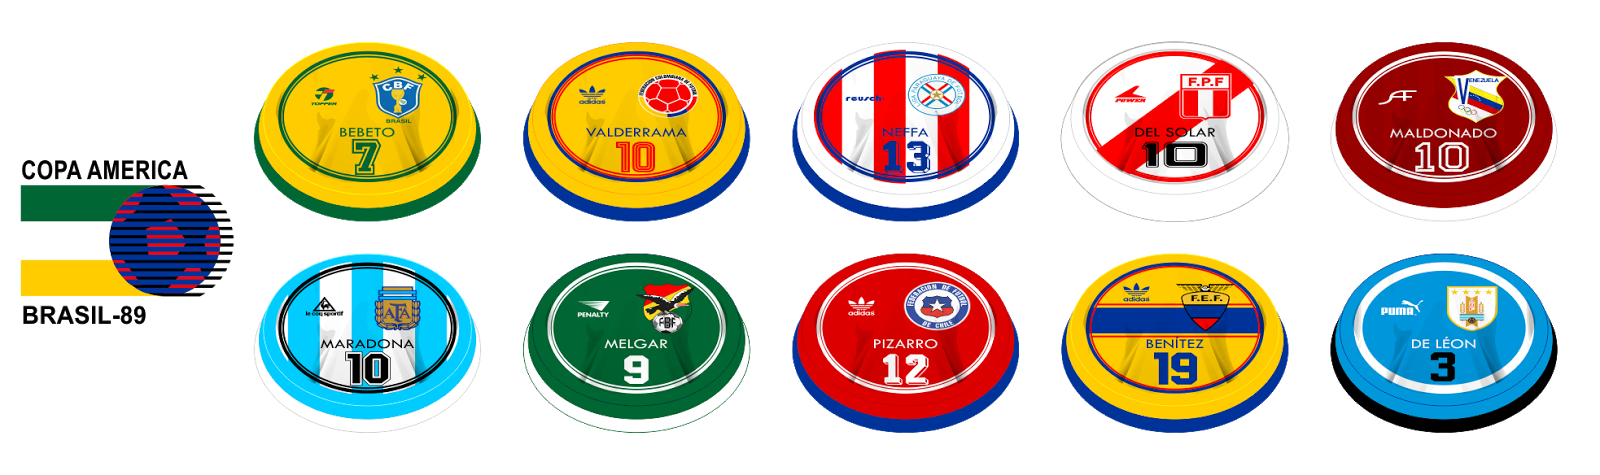 Design de botão: Copa América 1989 - Brasil